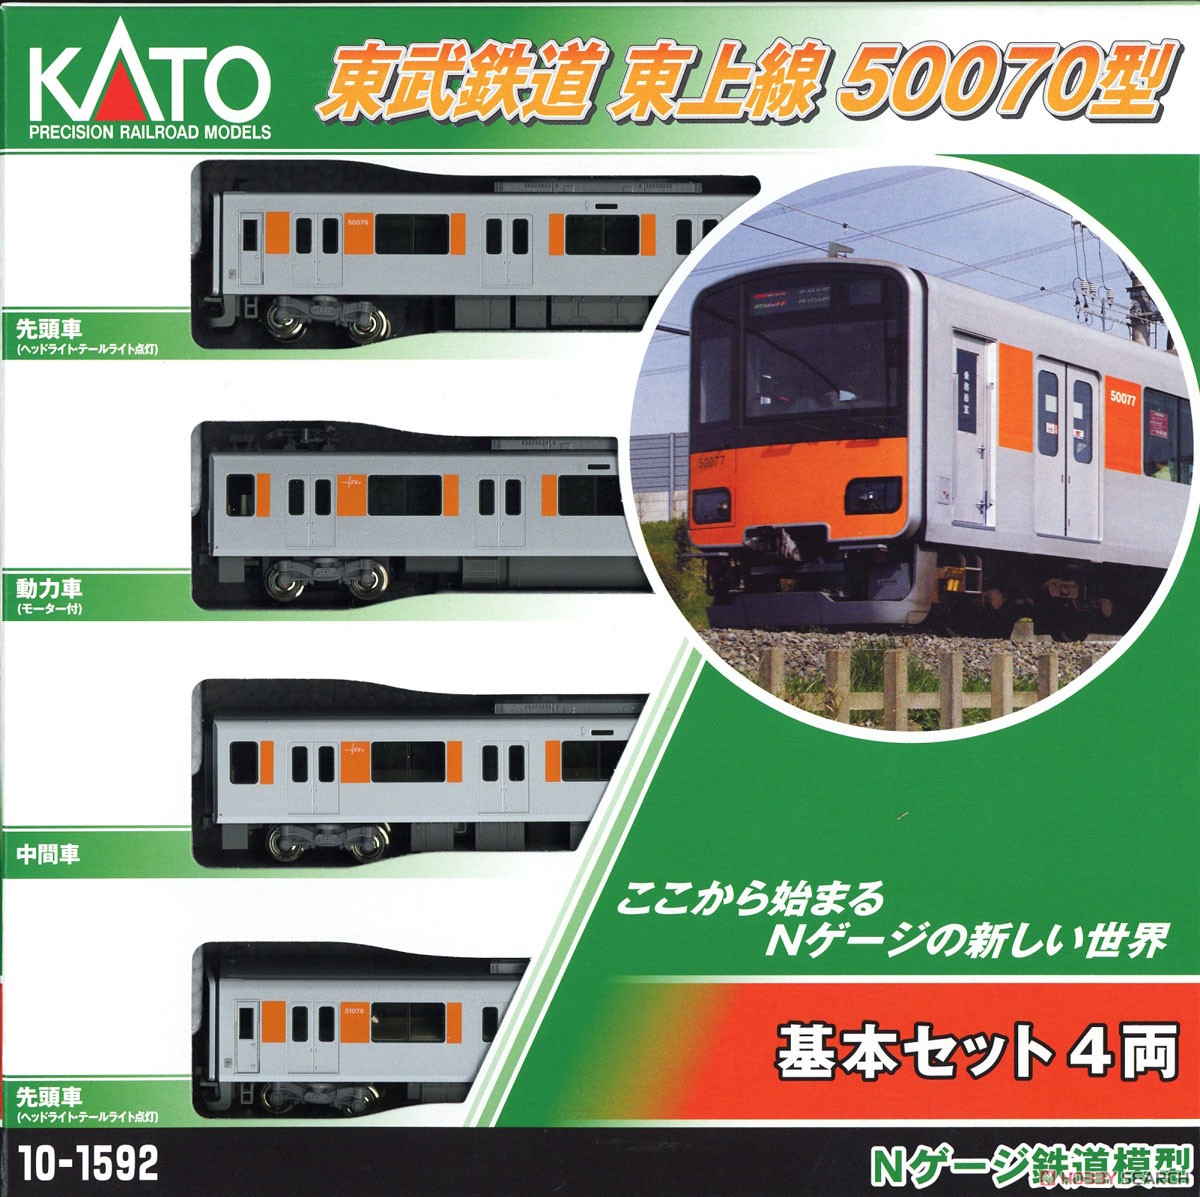 東武鉄道 東上線 50070型 基本セット (4両) (基本・4両セット) (鉄道模型) パッケージ1